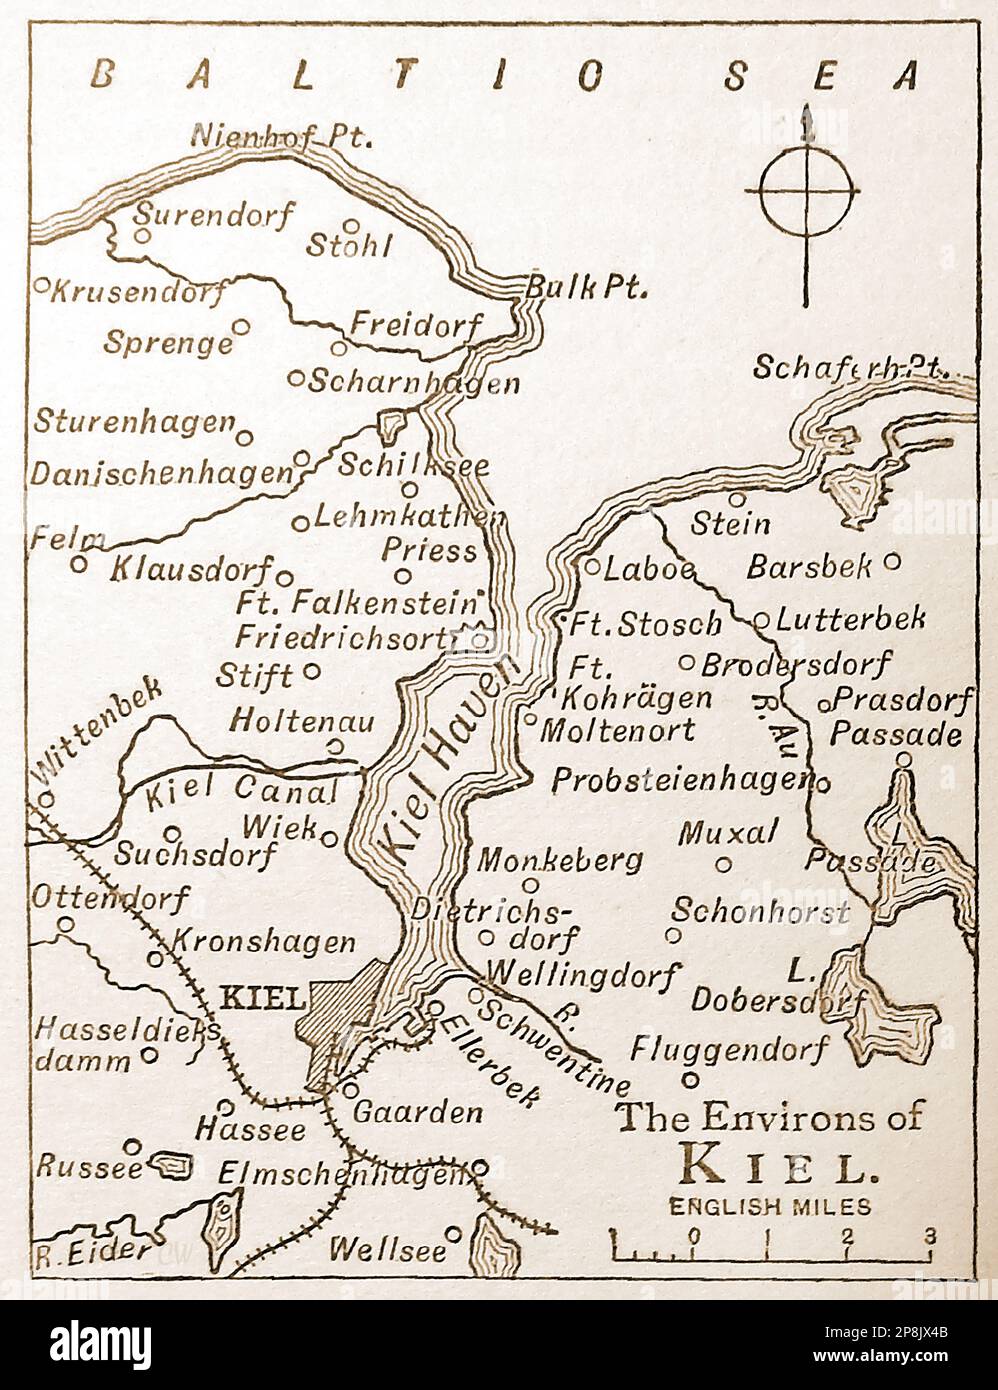 Un viejo mapa del siglo 19th de Kiel (entonces en Prusia ahora Alemania) - Eine alte karte aus dem 19. Jahrhundert von Kiel (damals in Preußen, Alemania) - Foto de stock